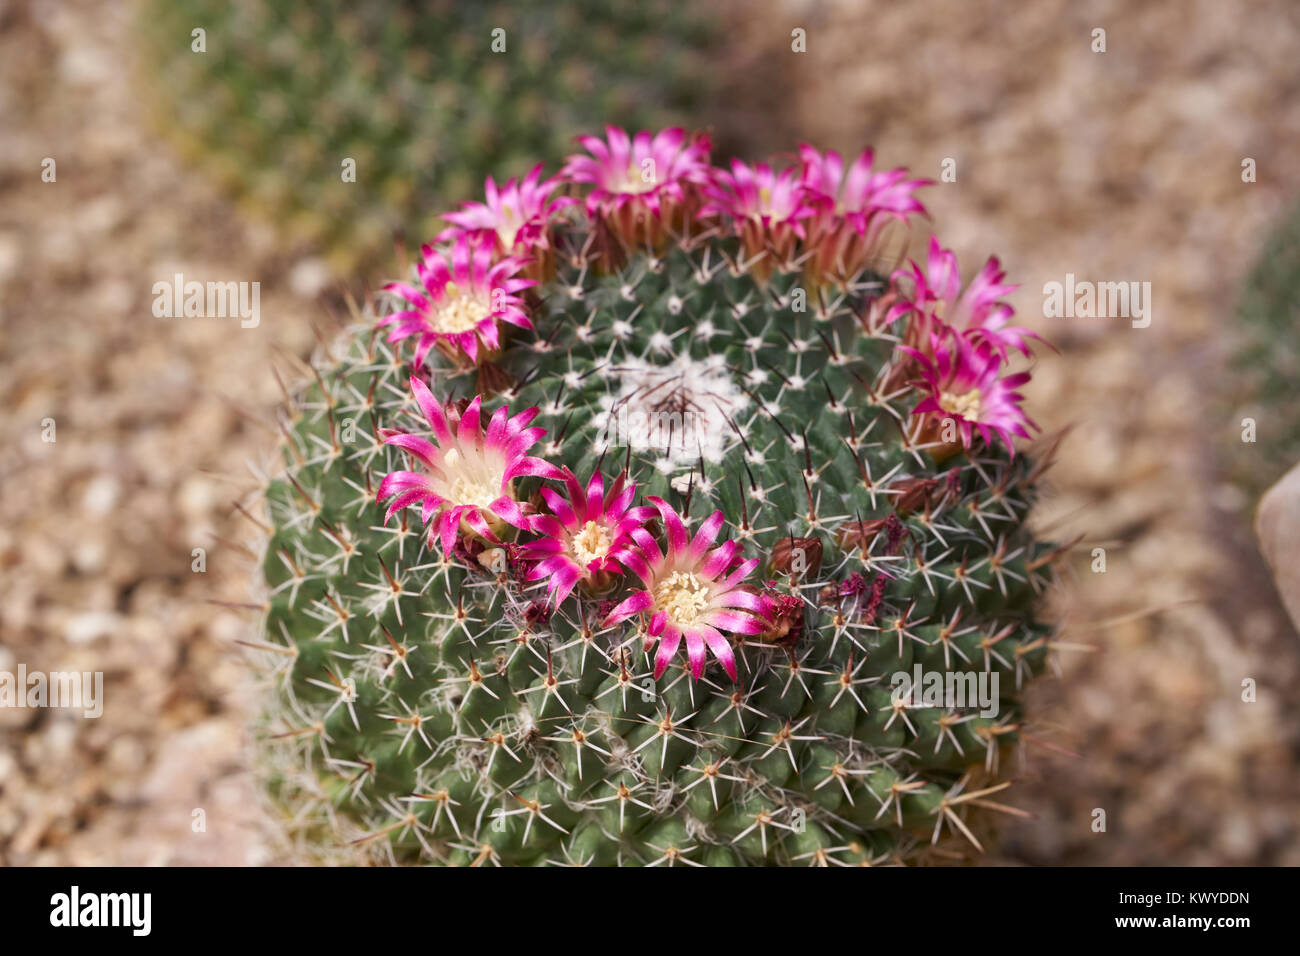 Mammillaria mystax est une espèce de cactus dans la famille des Cactaceae. Il est originaire de l'mexicains de Hidalgo, Oaxaca et Puebla central. Banque D'Images